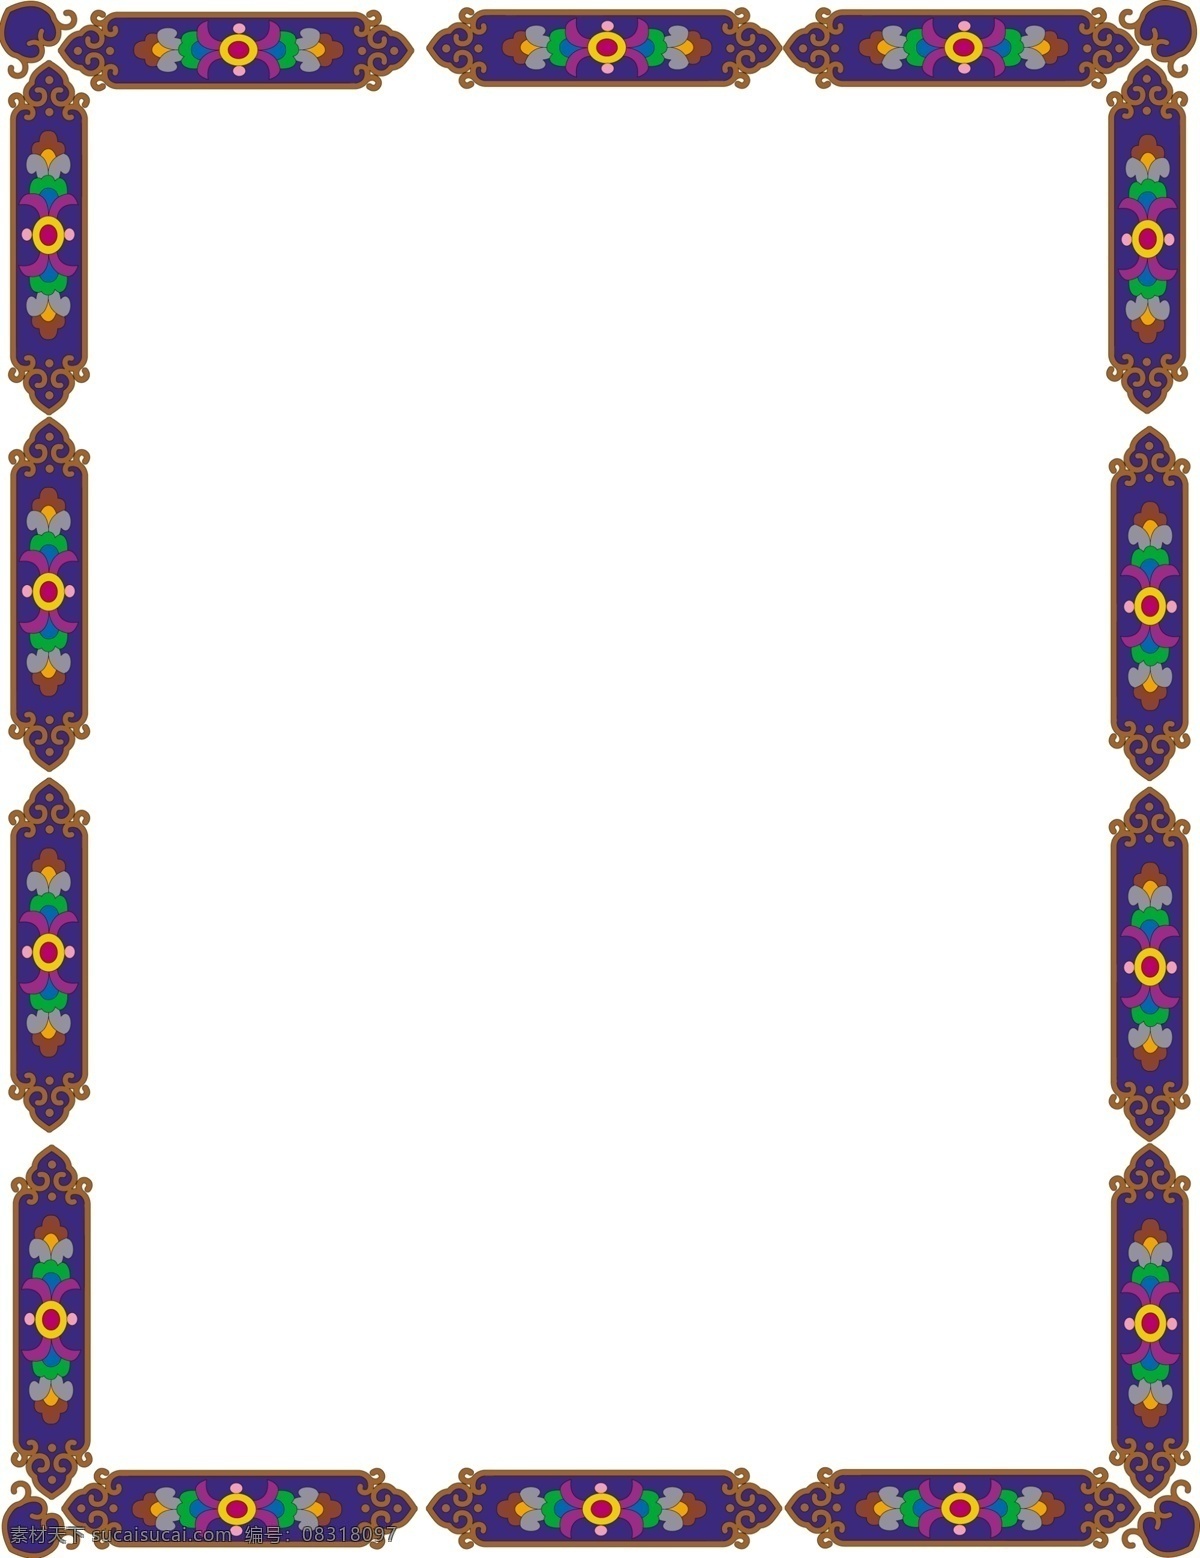 古代宫廷边框 模版下载 边框素材 家纺素材 花型设计 底纹边框 花边花纹